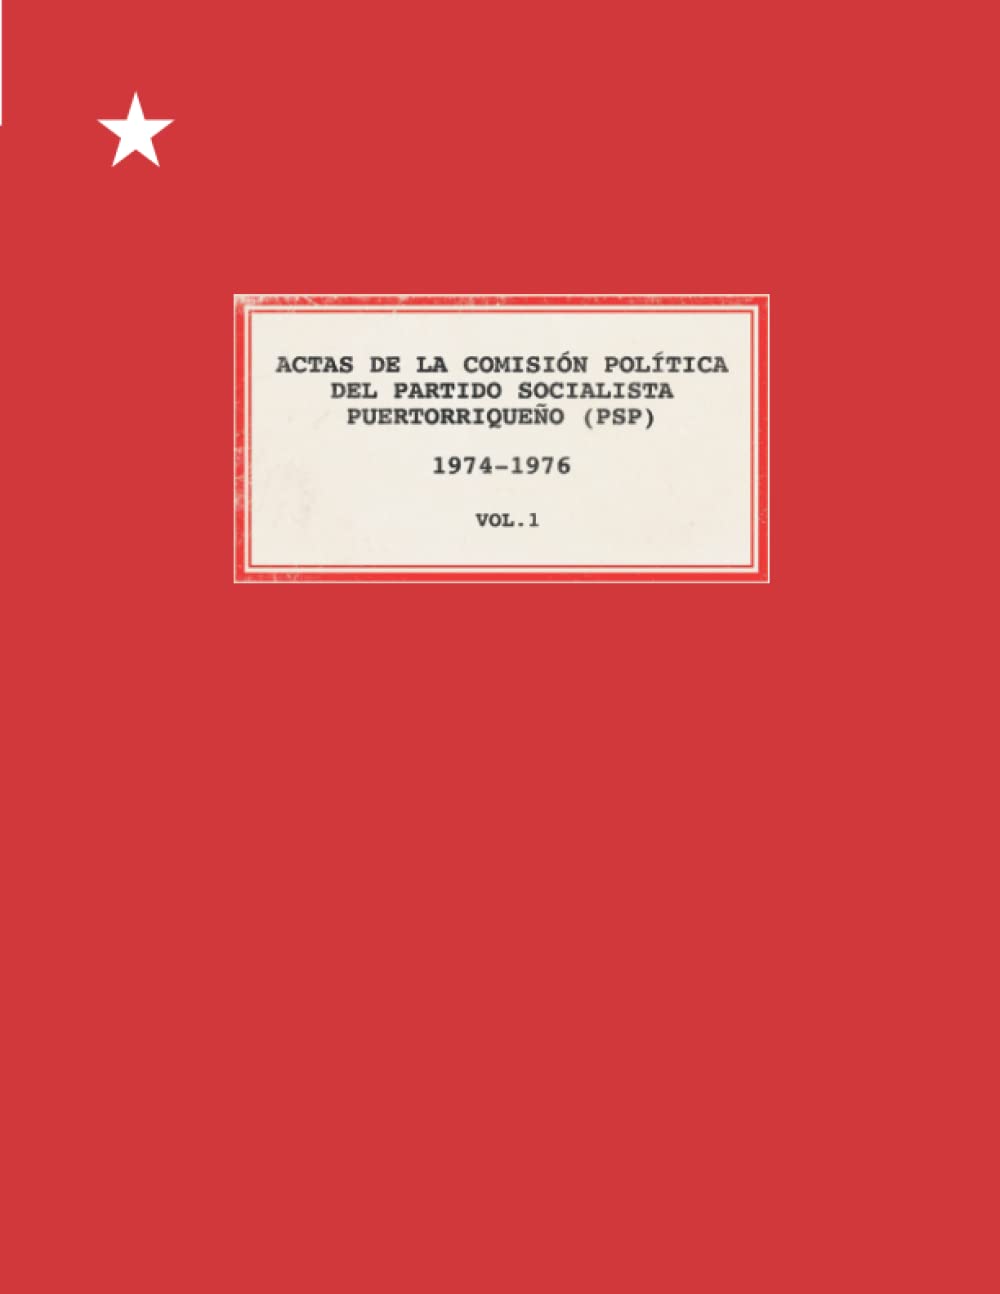 ACTAS DE LA COMISIÓN POLÍTICA DEL PARTIDO SOCIALISTA PUERTORRIQUEÑO (PSP) 1974-1976 2 VOLS. (SET)